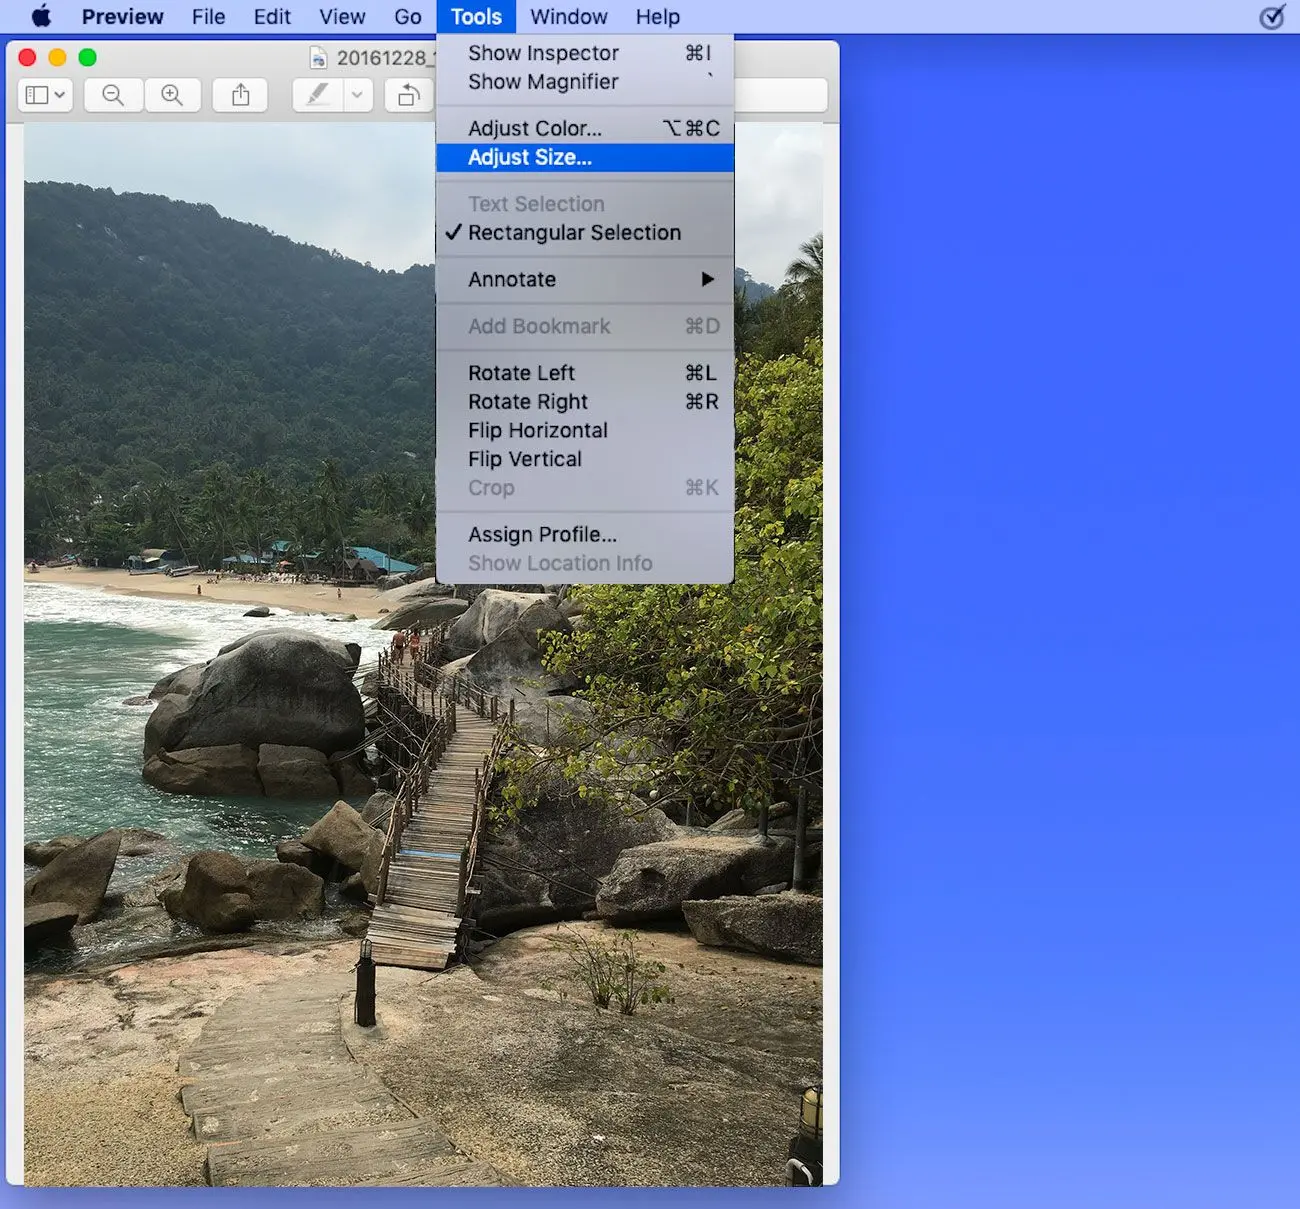 Upravit velikost souboru obrázku na MAC v MB nebo KB..